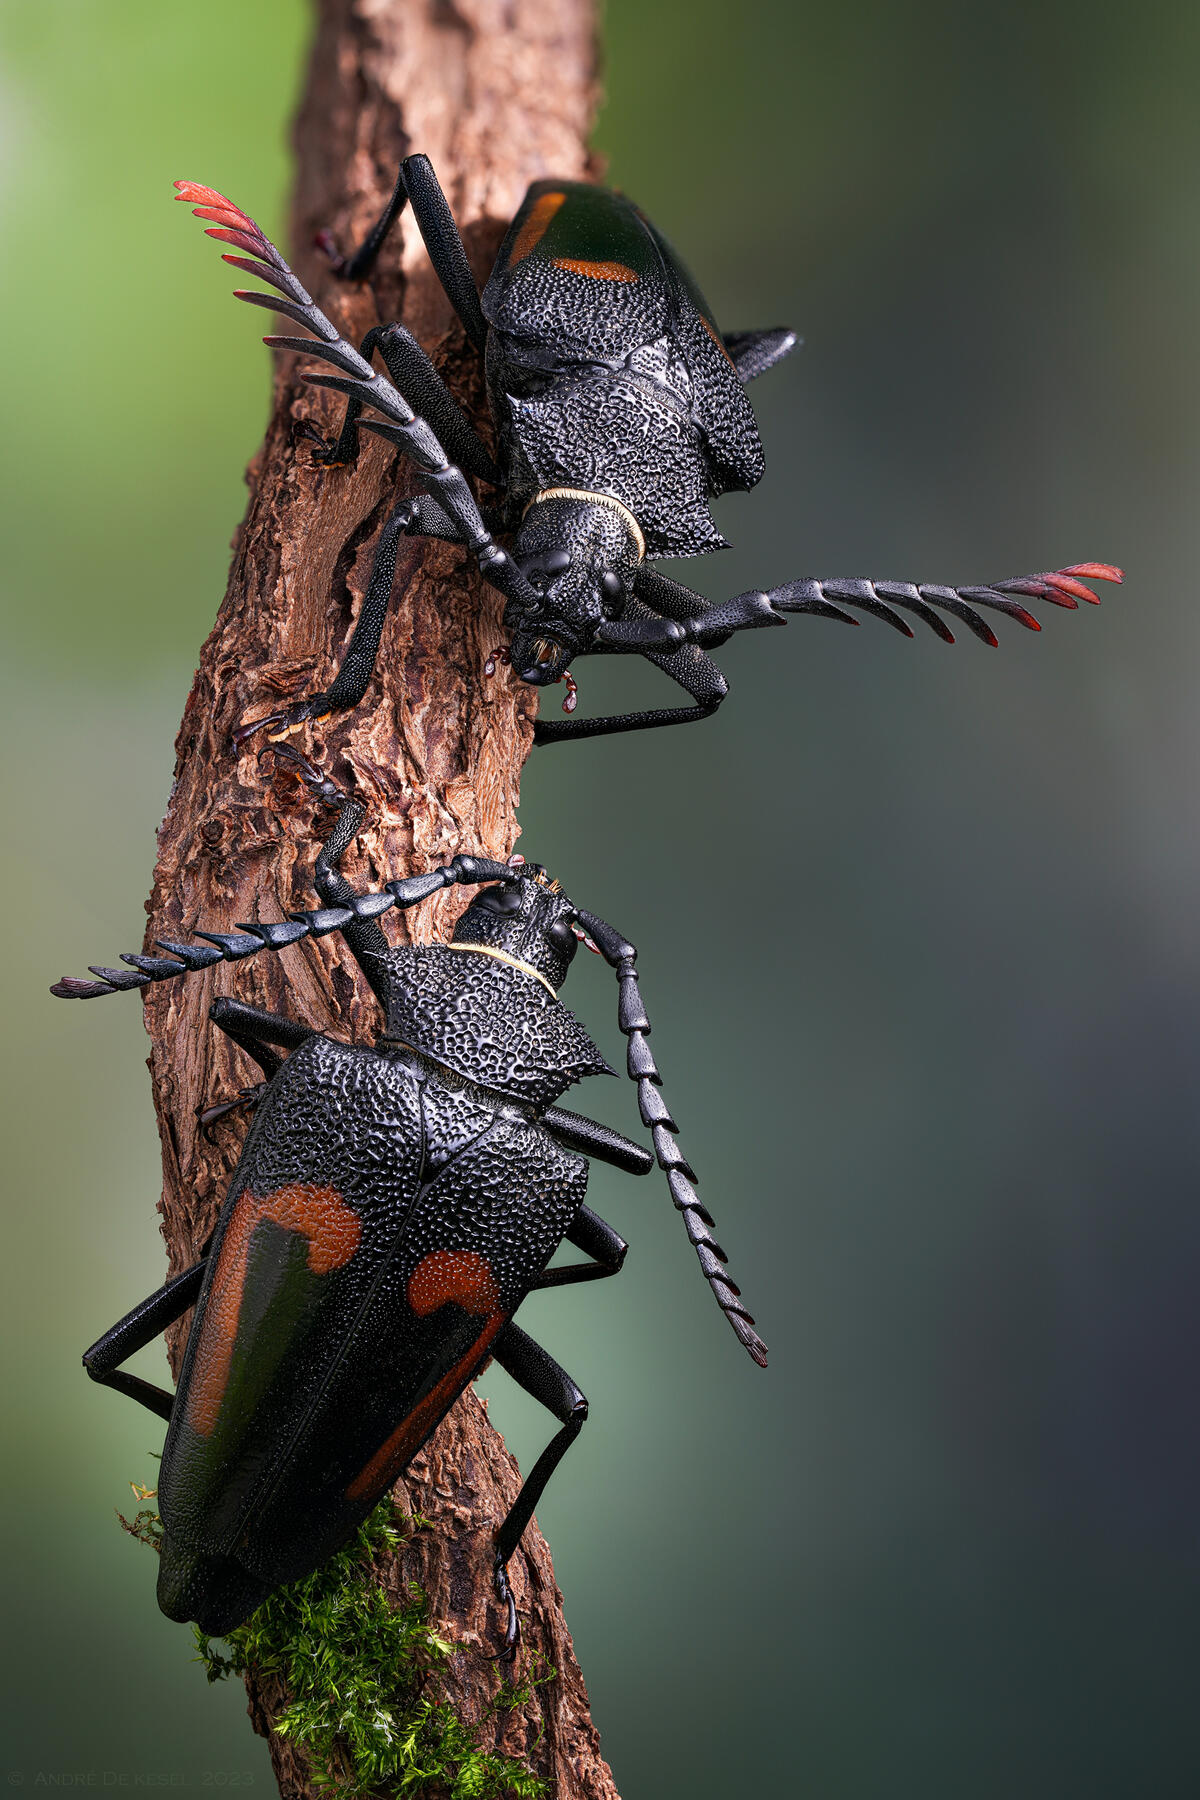 Two beetles met on the branch